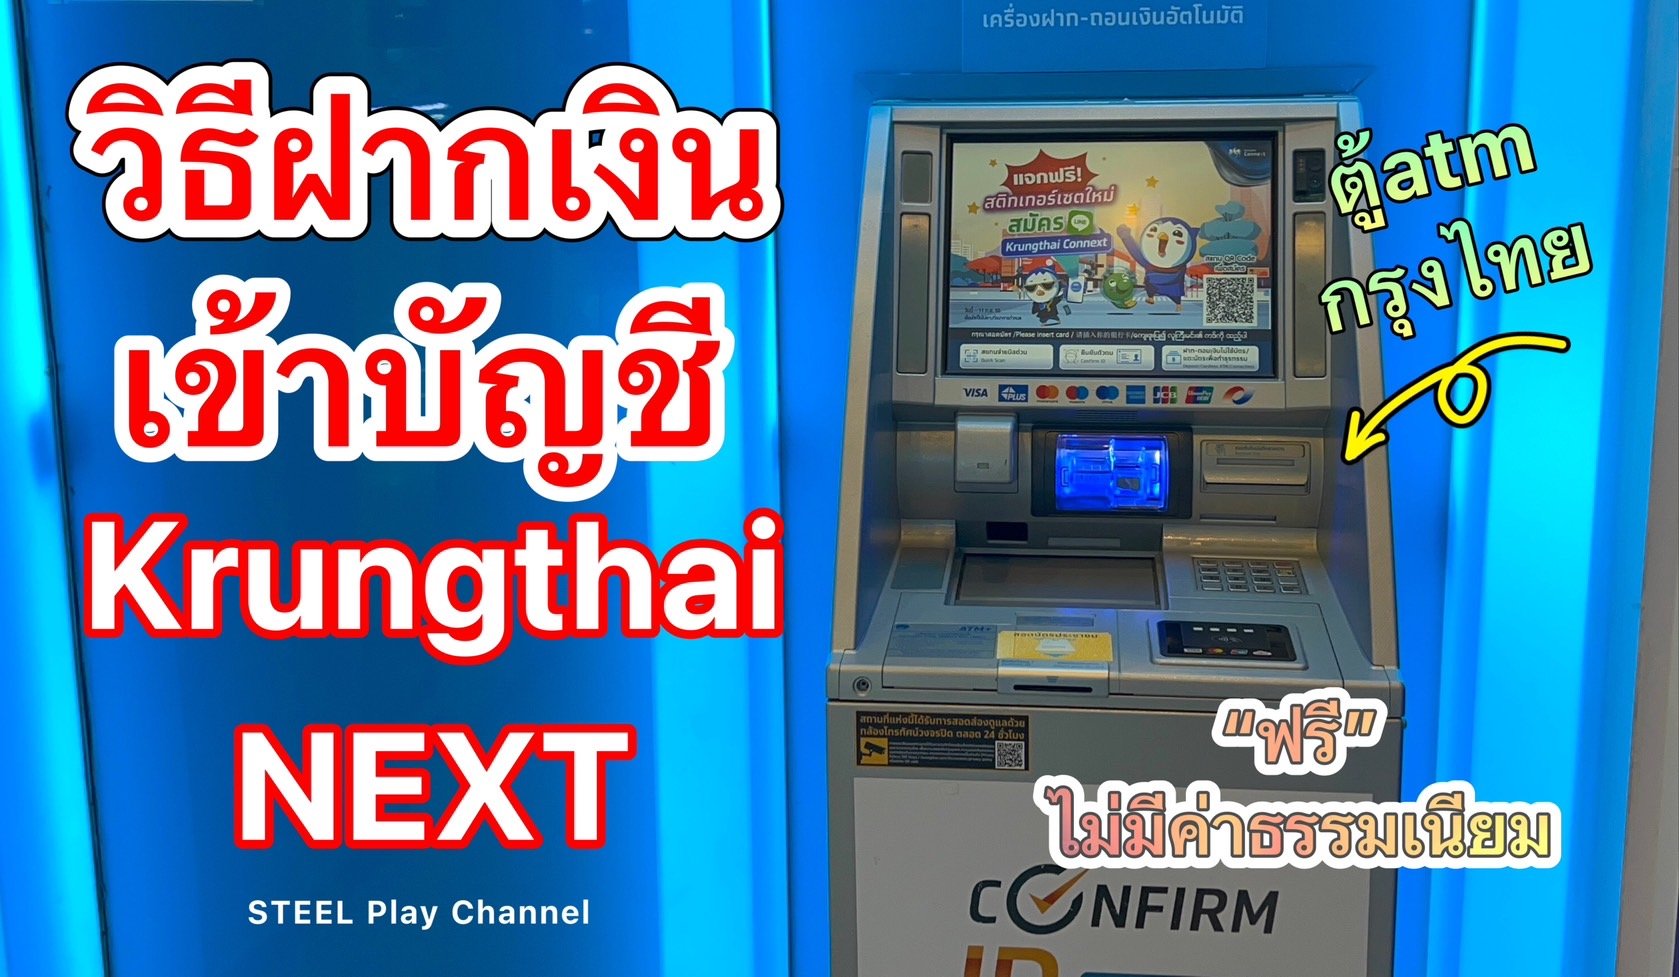 วิธีฝากเงินเข้าบัญชีออนไลน์ Krungthai Next 